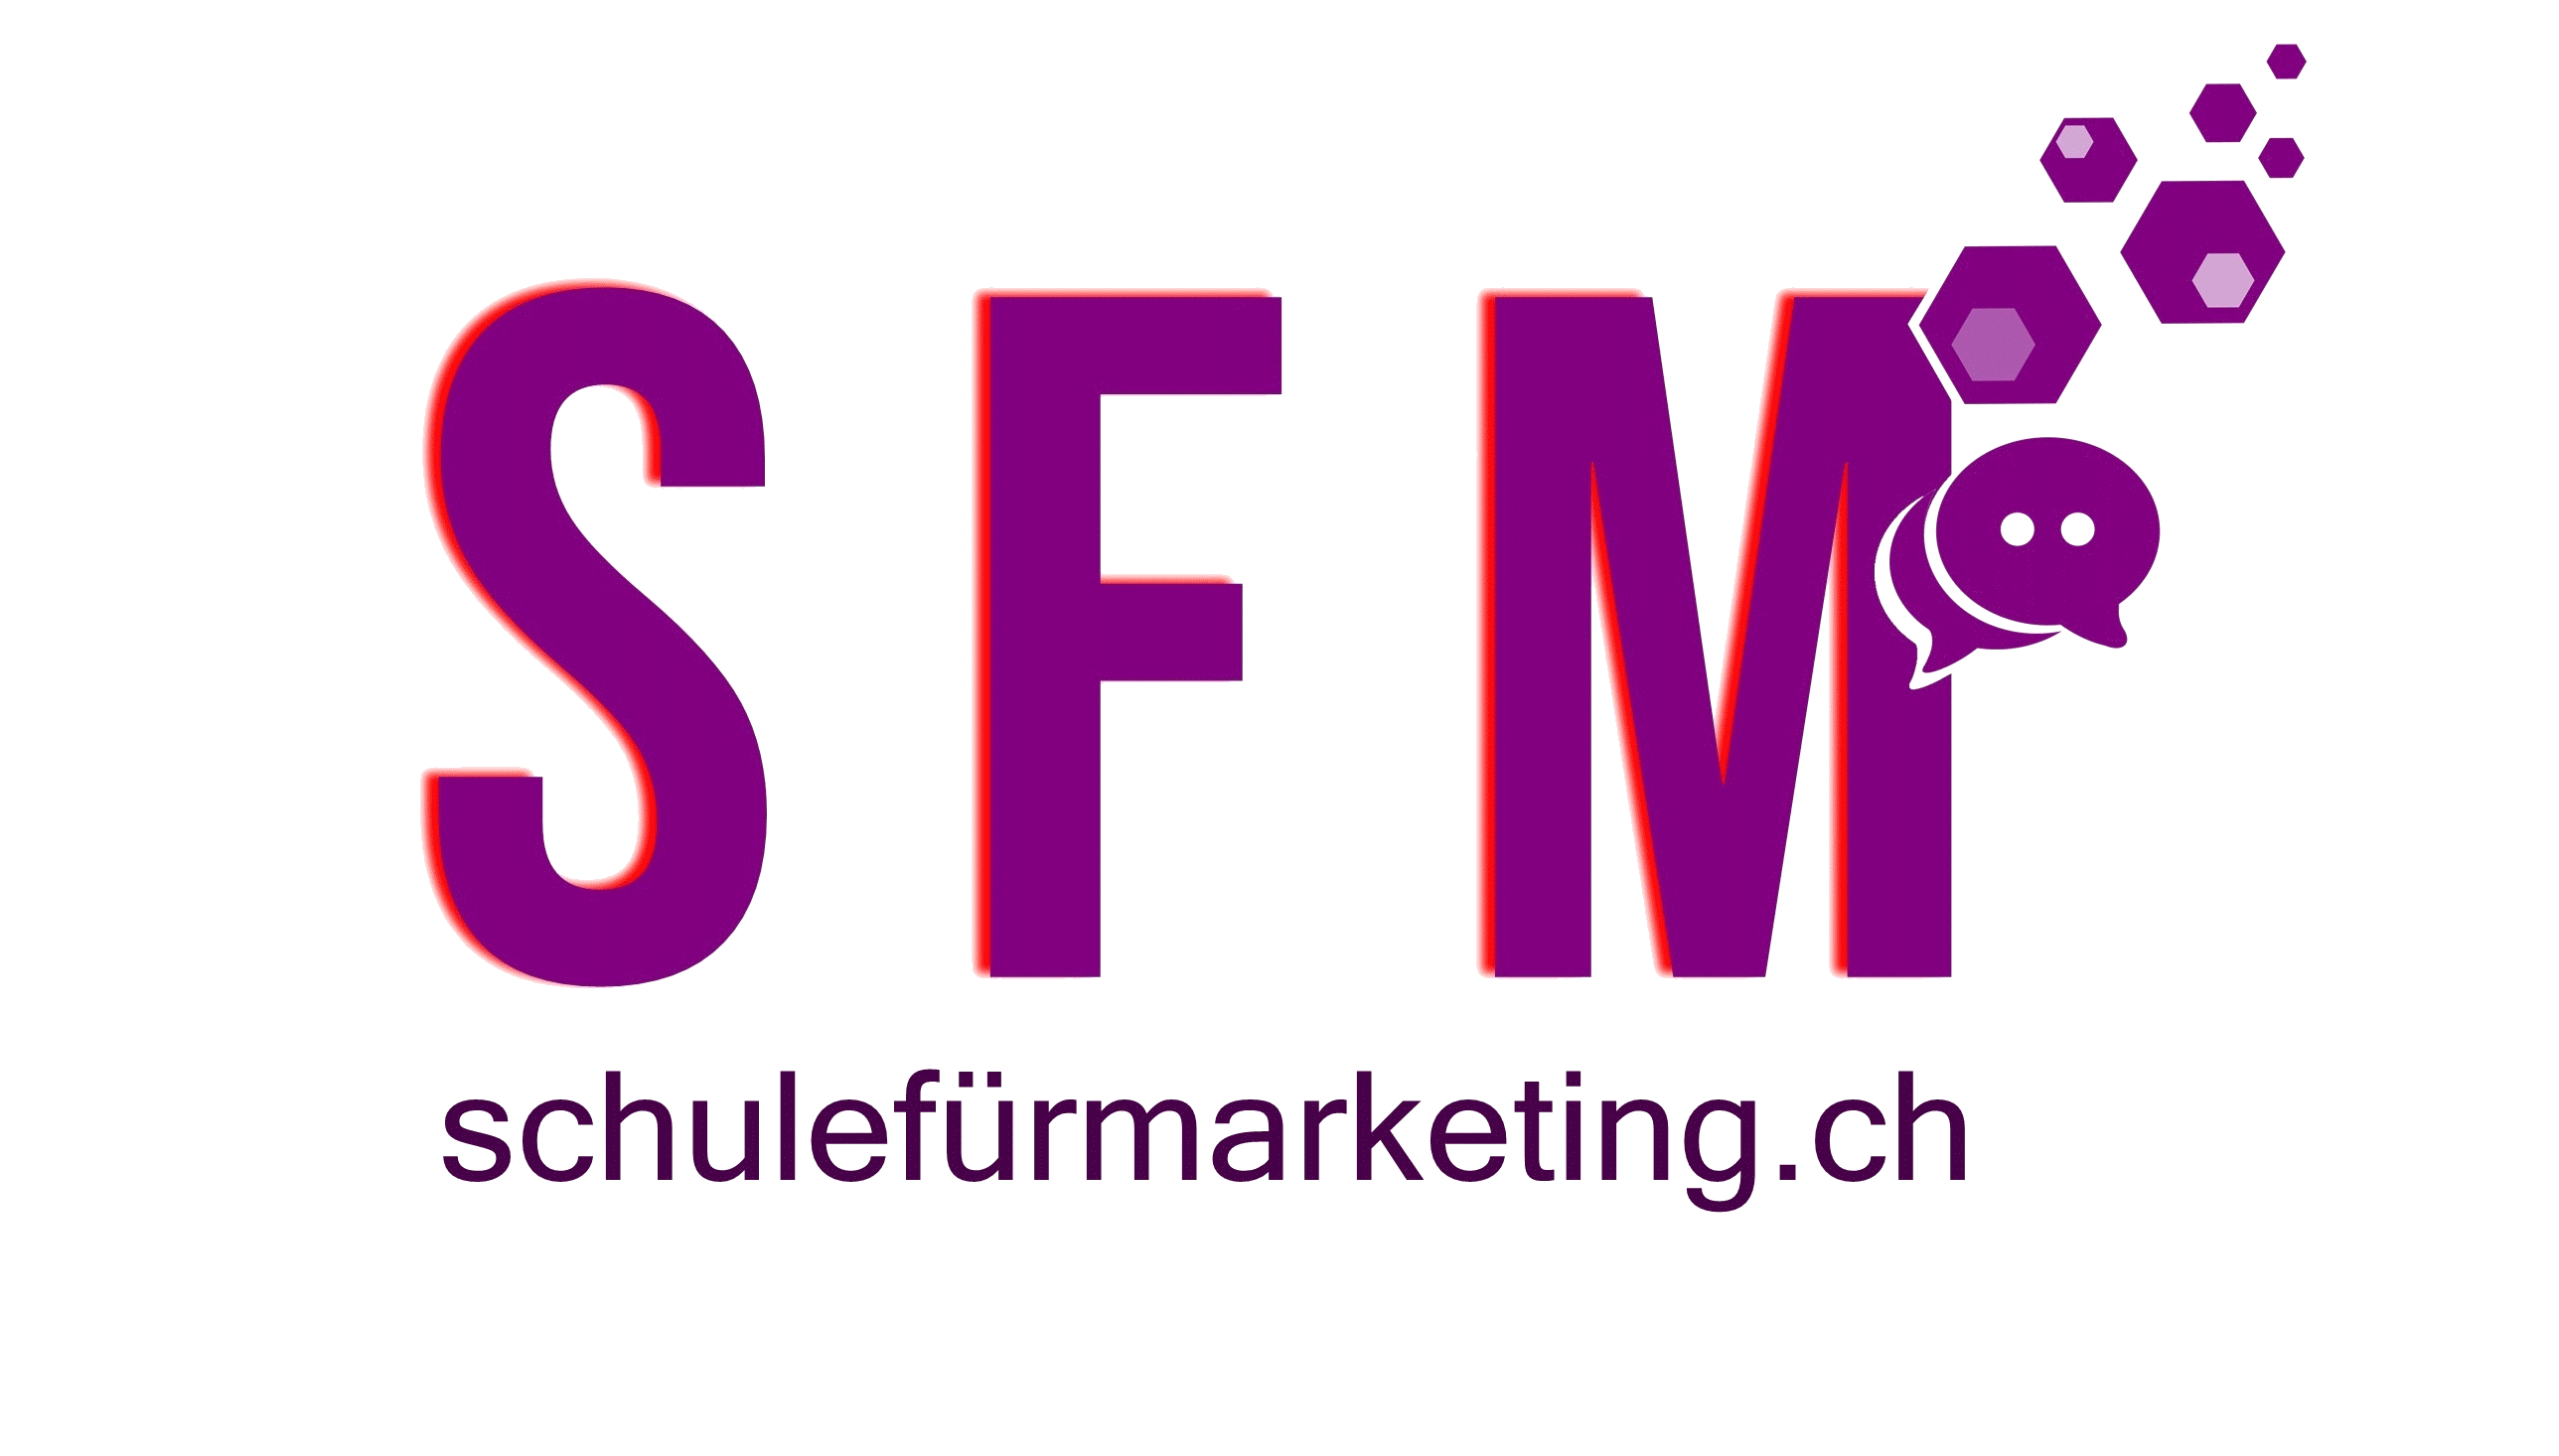 SFM, Schule für Marketing